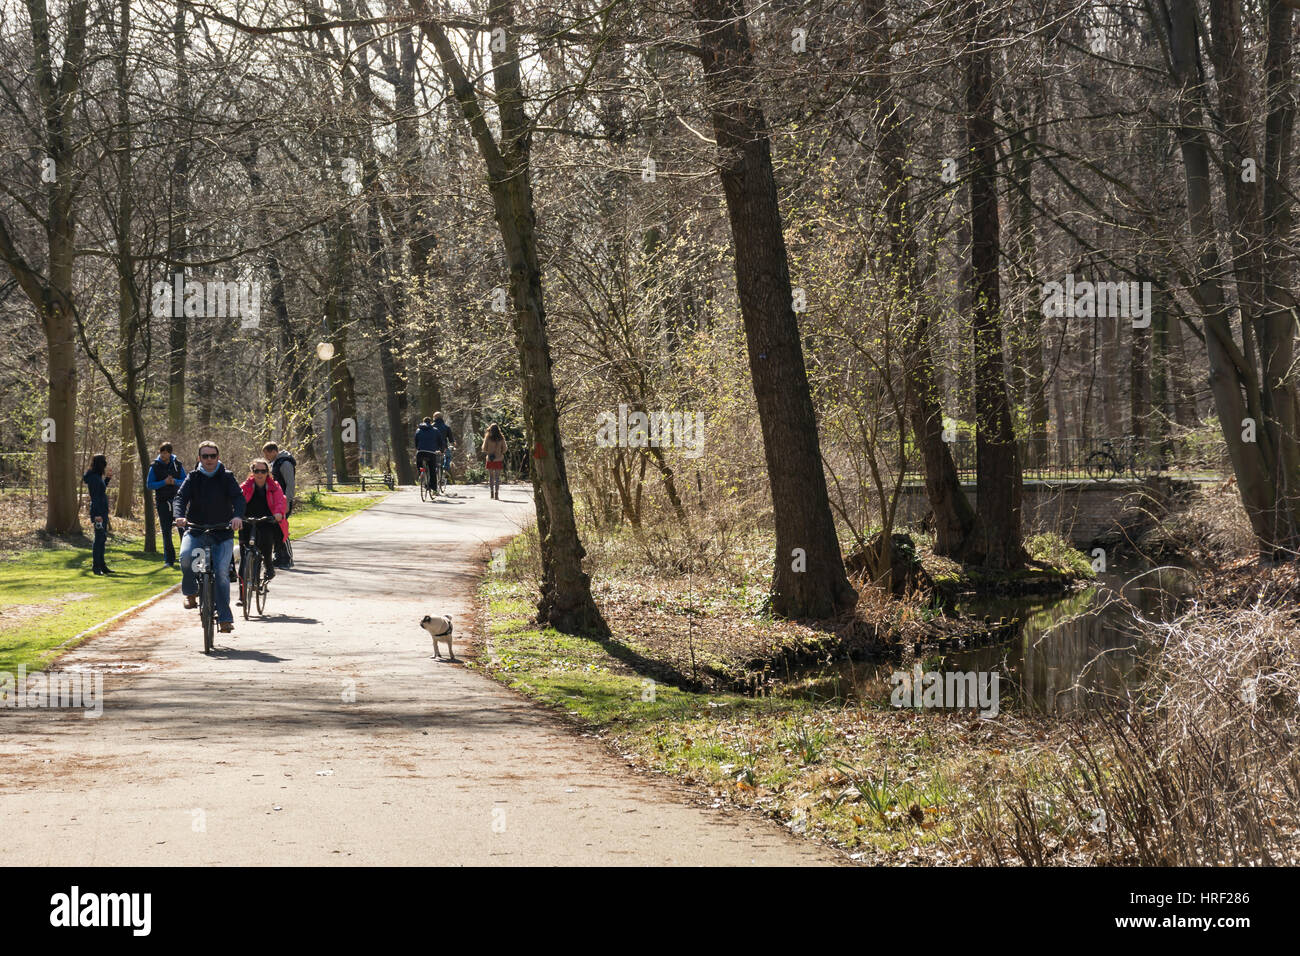 Menschen in einem Stadtpark an einem kalten Tag Radfahren. Tiergarten, Berlin, Deutschland Stockfoto